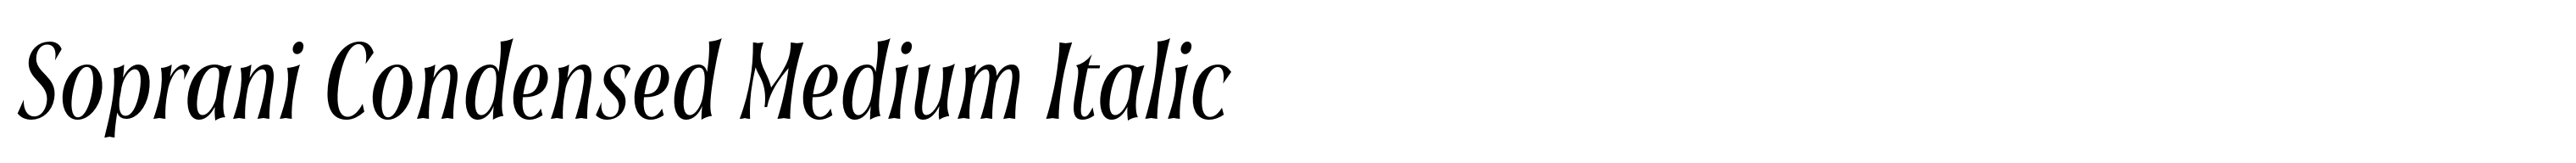 Soprani Condensed Medium Italic